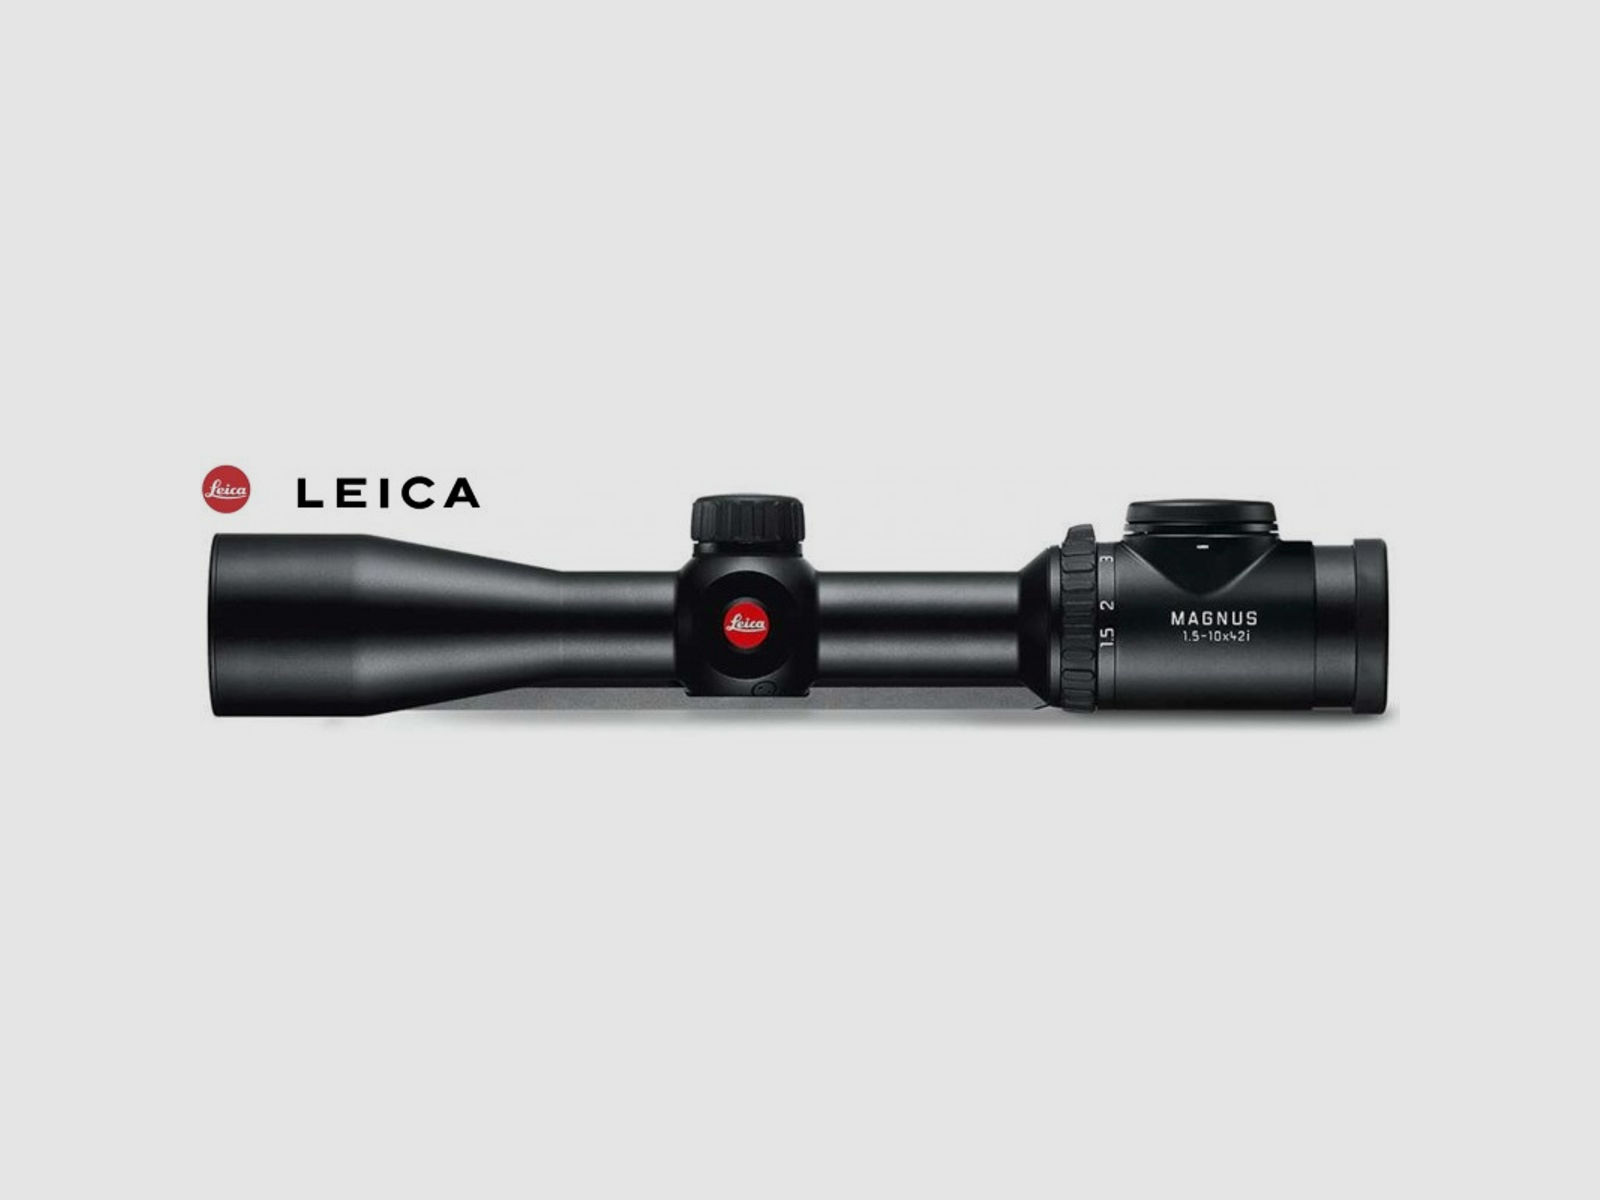 Leica Magnus 1,5-10x42 i, L-4a mit Schiene